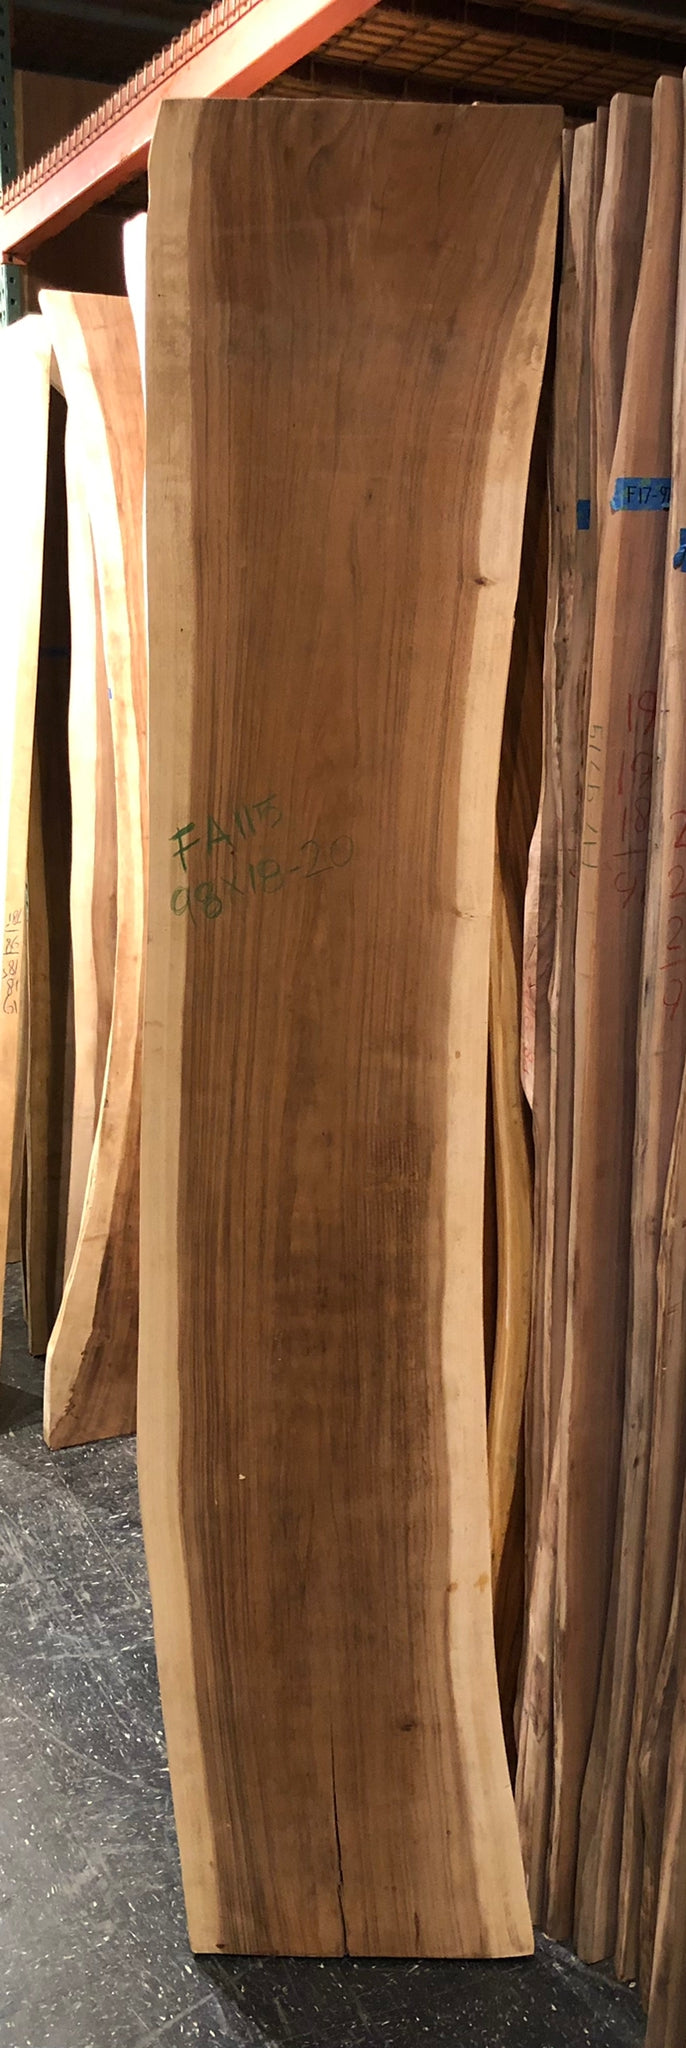 FA115-9820 Live edge acacia wood 98